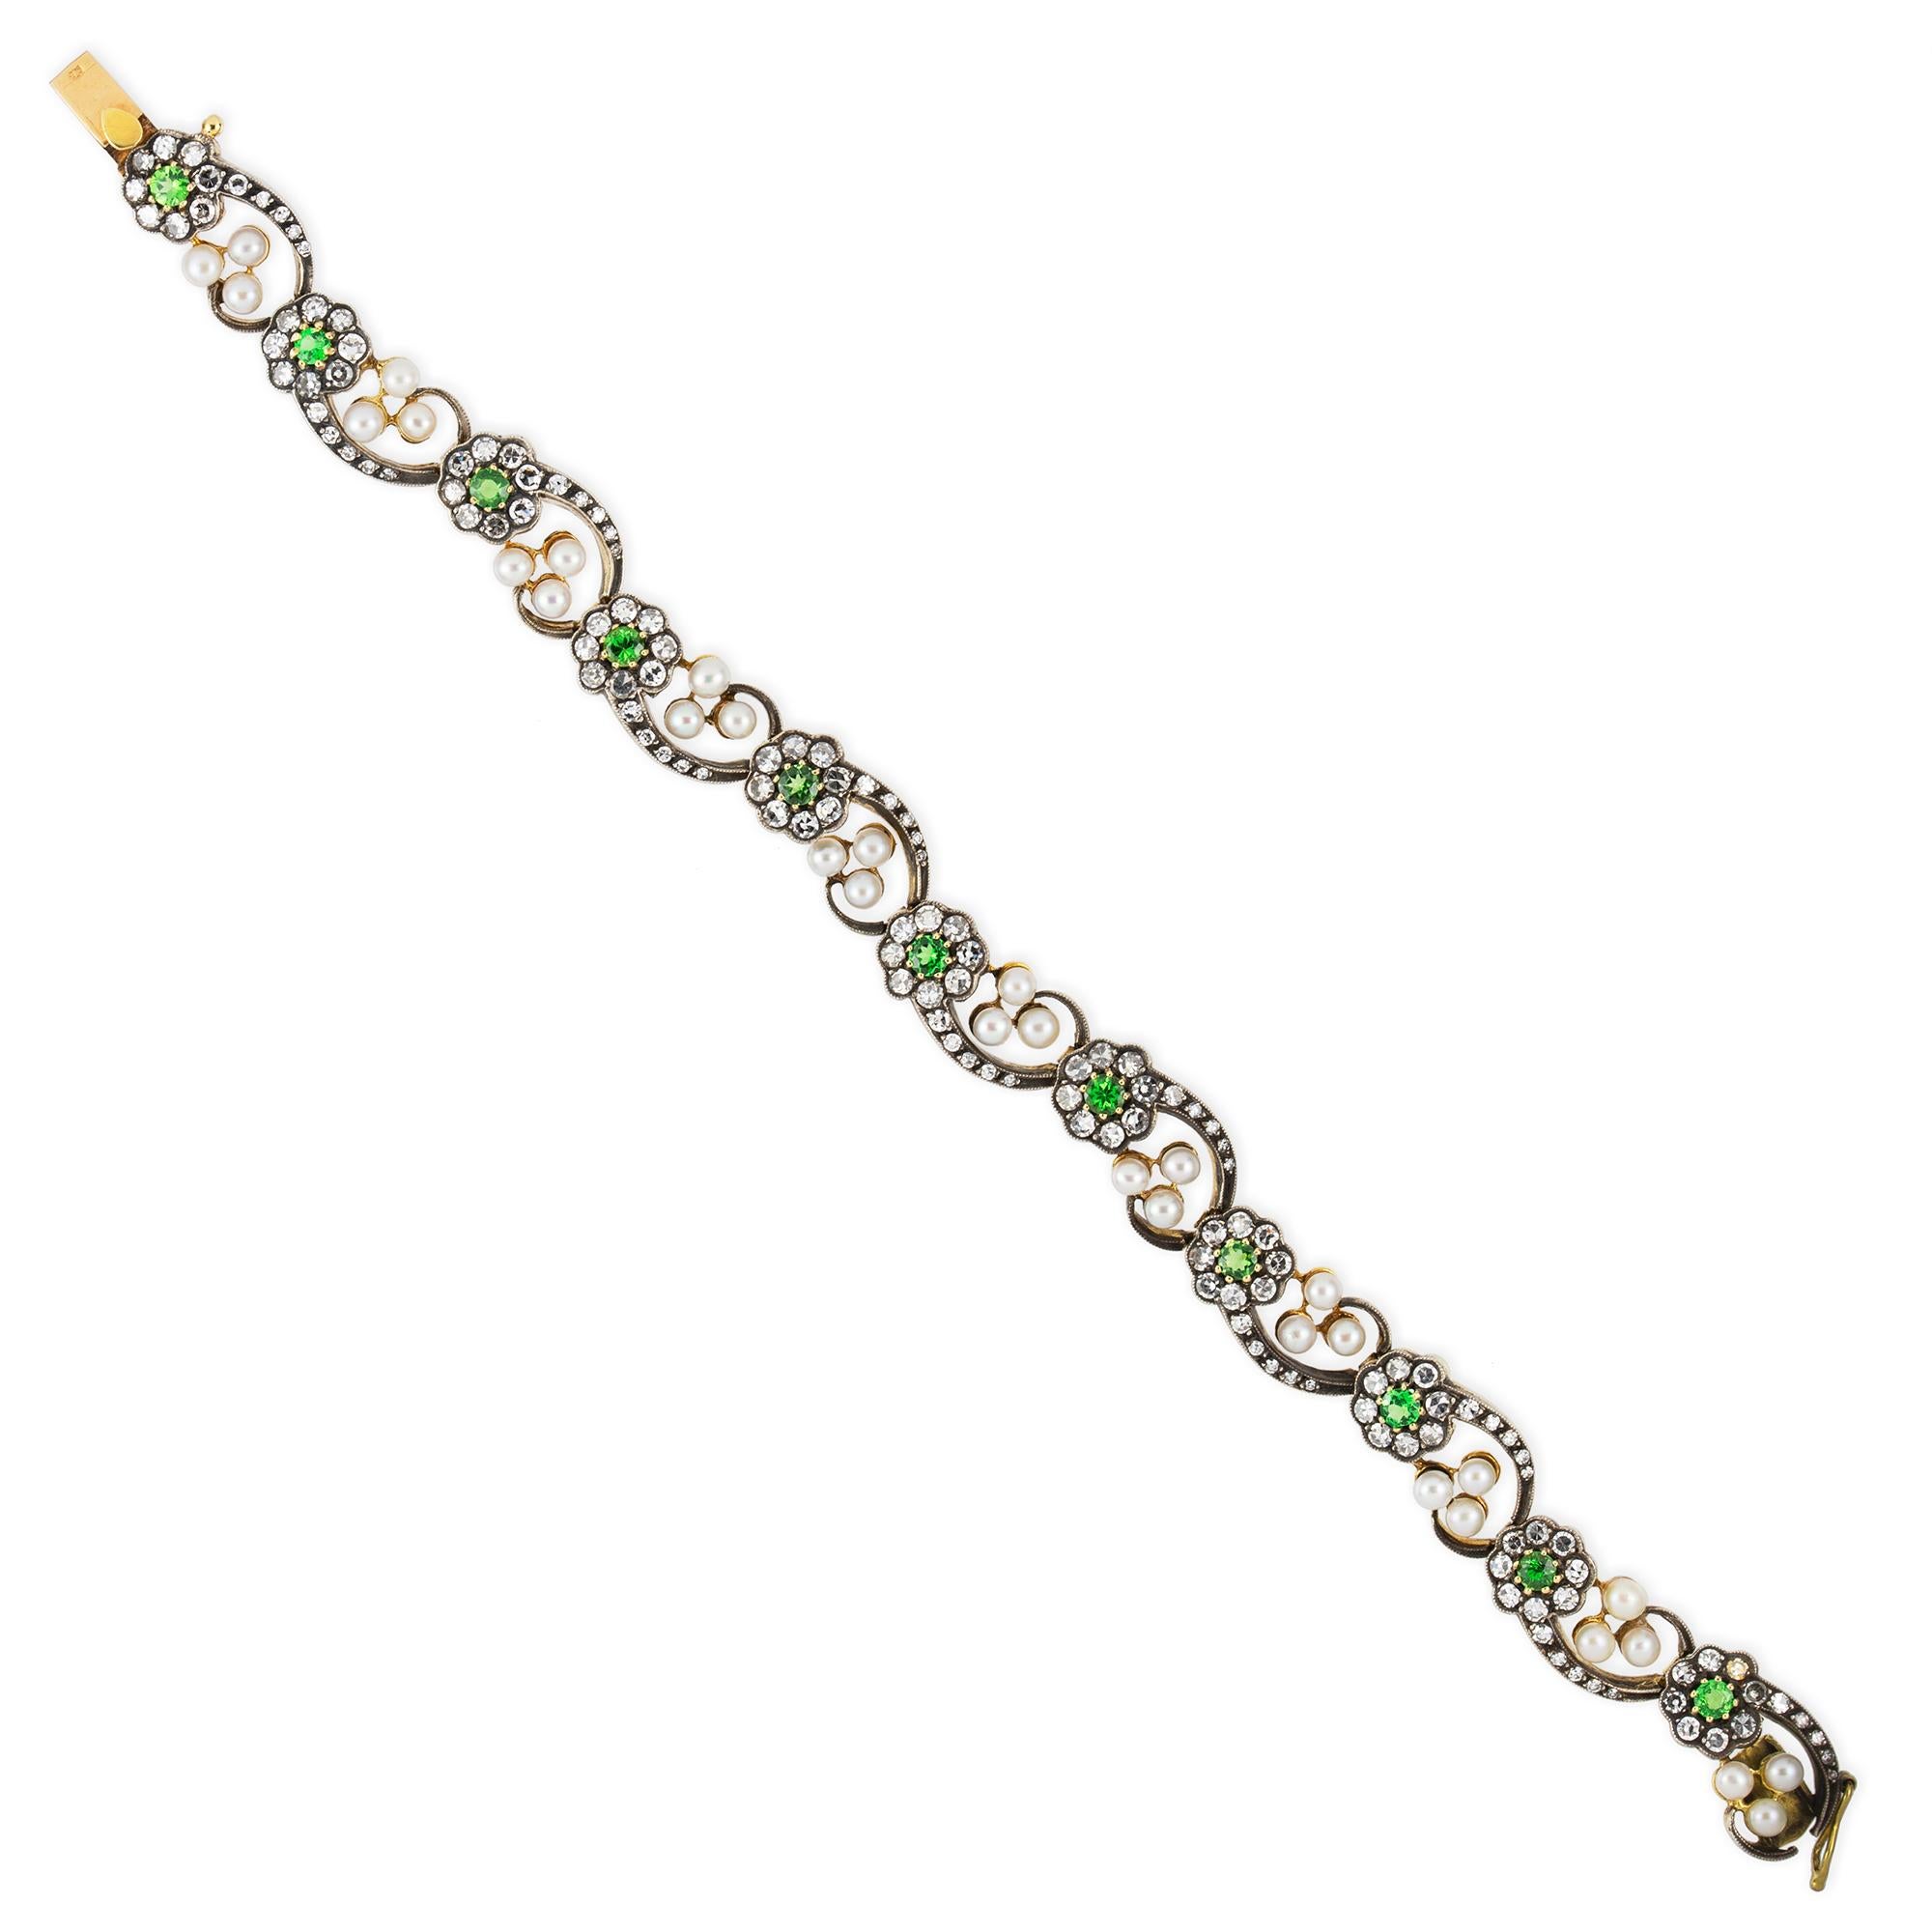 Ein Armband mit Demantoid-Granat und Diamanten aus der Jahrhundertwende, bestehend aus elf Gliedern, die jeweils eine Blume mit einem Demantoid-Granat in der Mitte tragen, mit Diamanten im Schweizer Schliff besetzte Blütenblätter und Stängel, die in